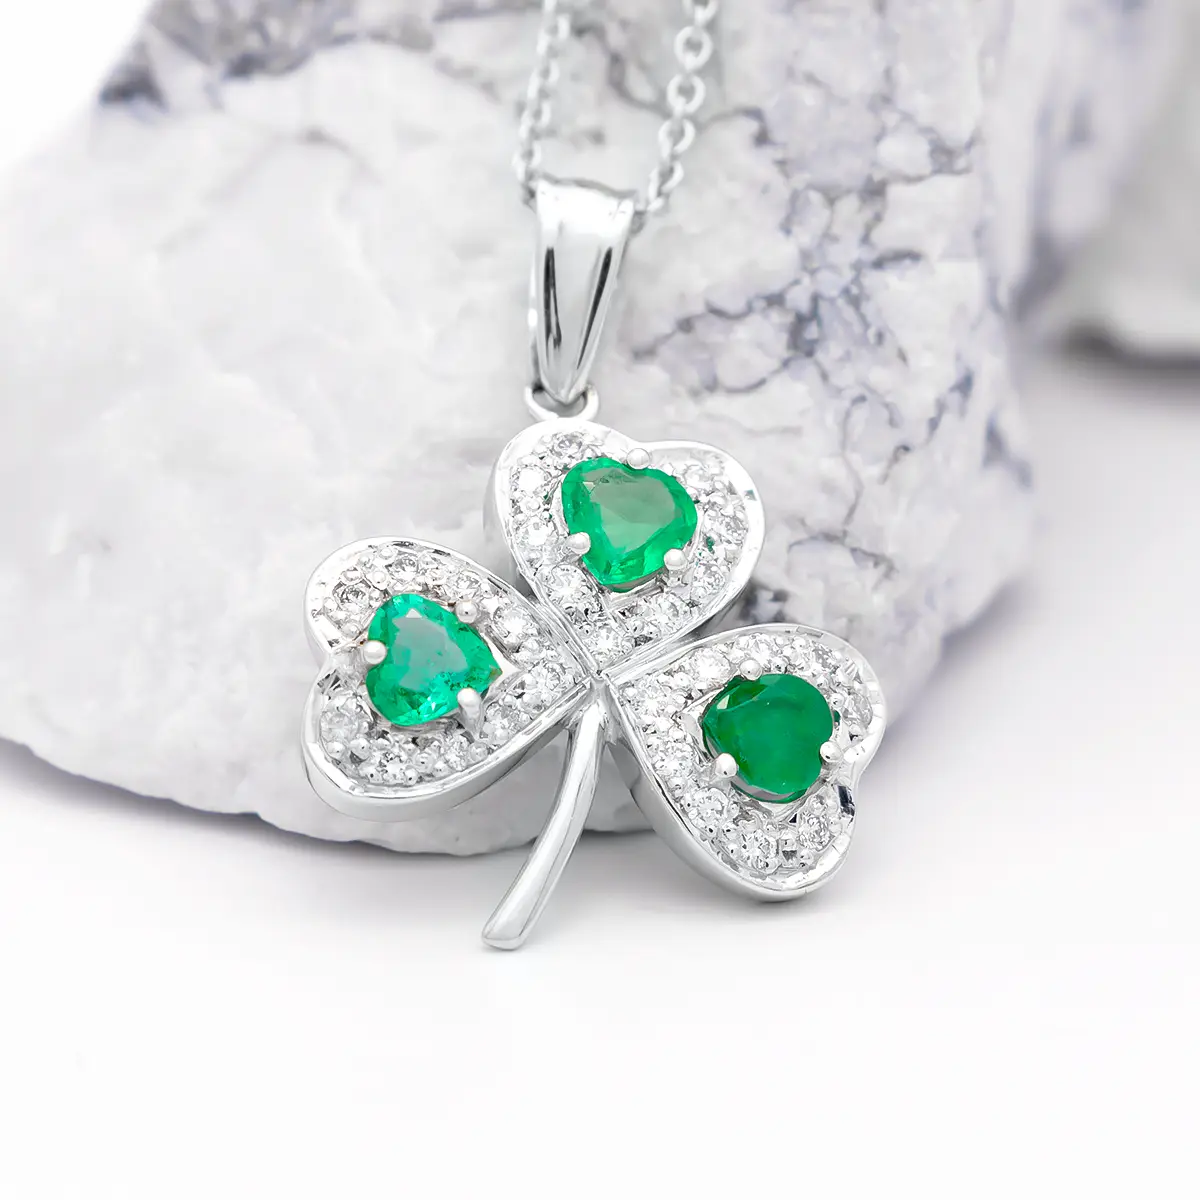 White Gold Heartshape Emerald And Diamond Shamrock Pendant...